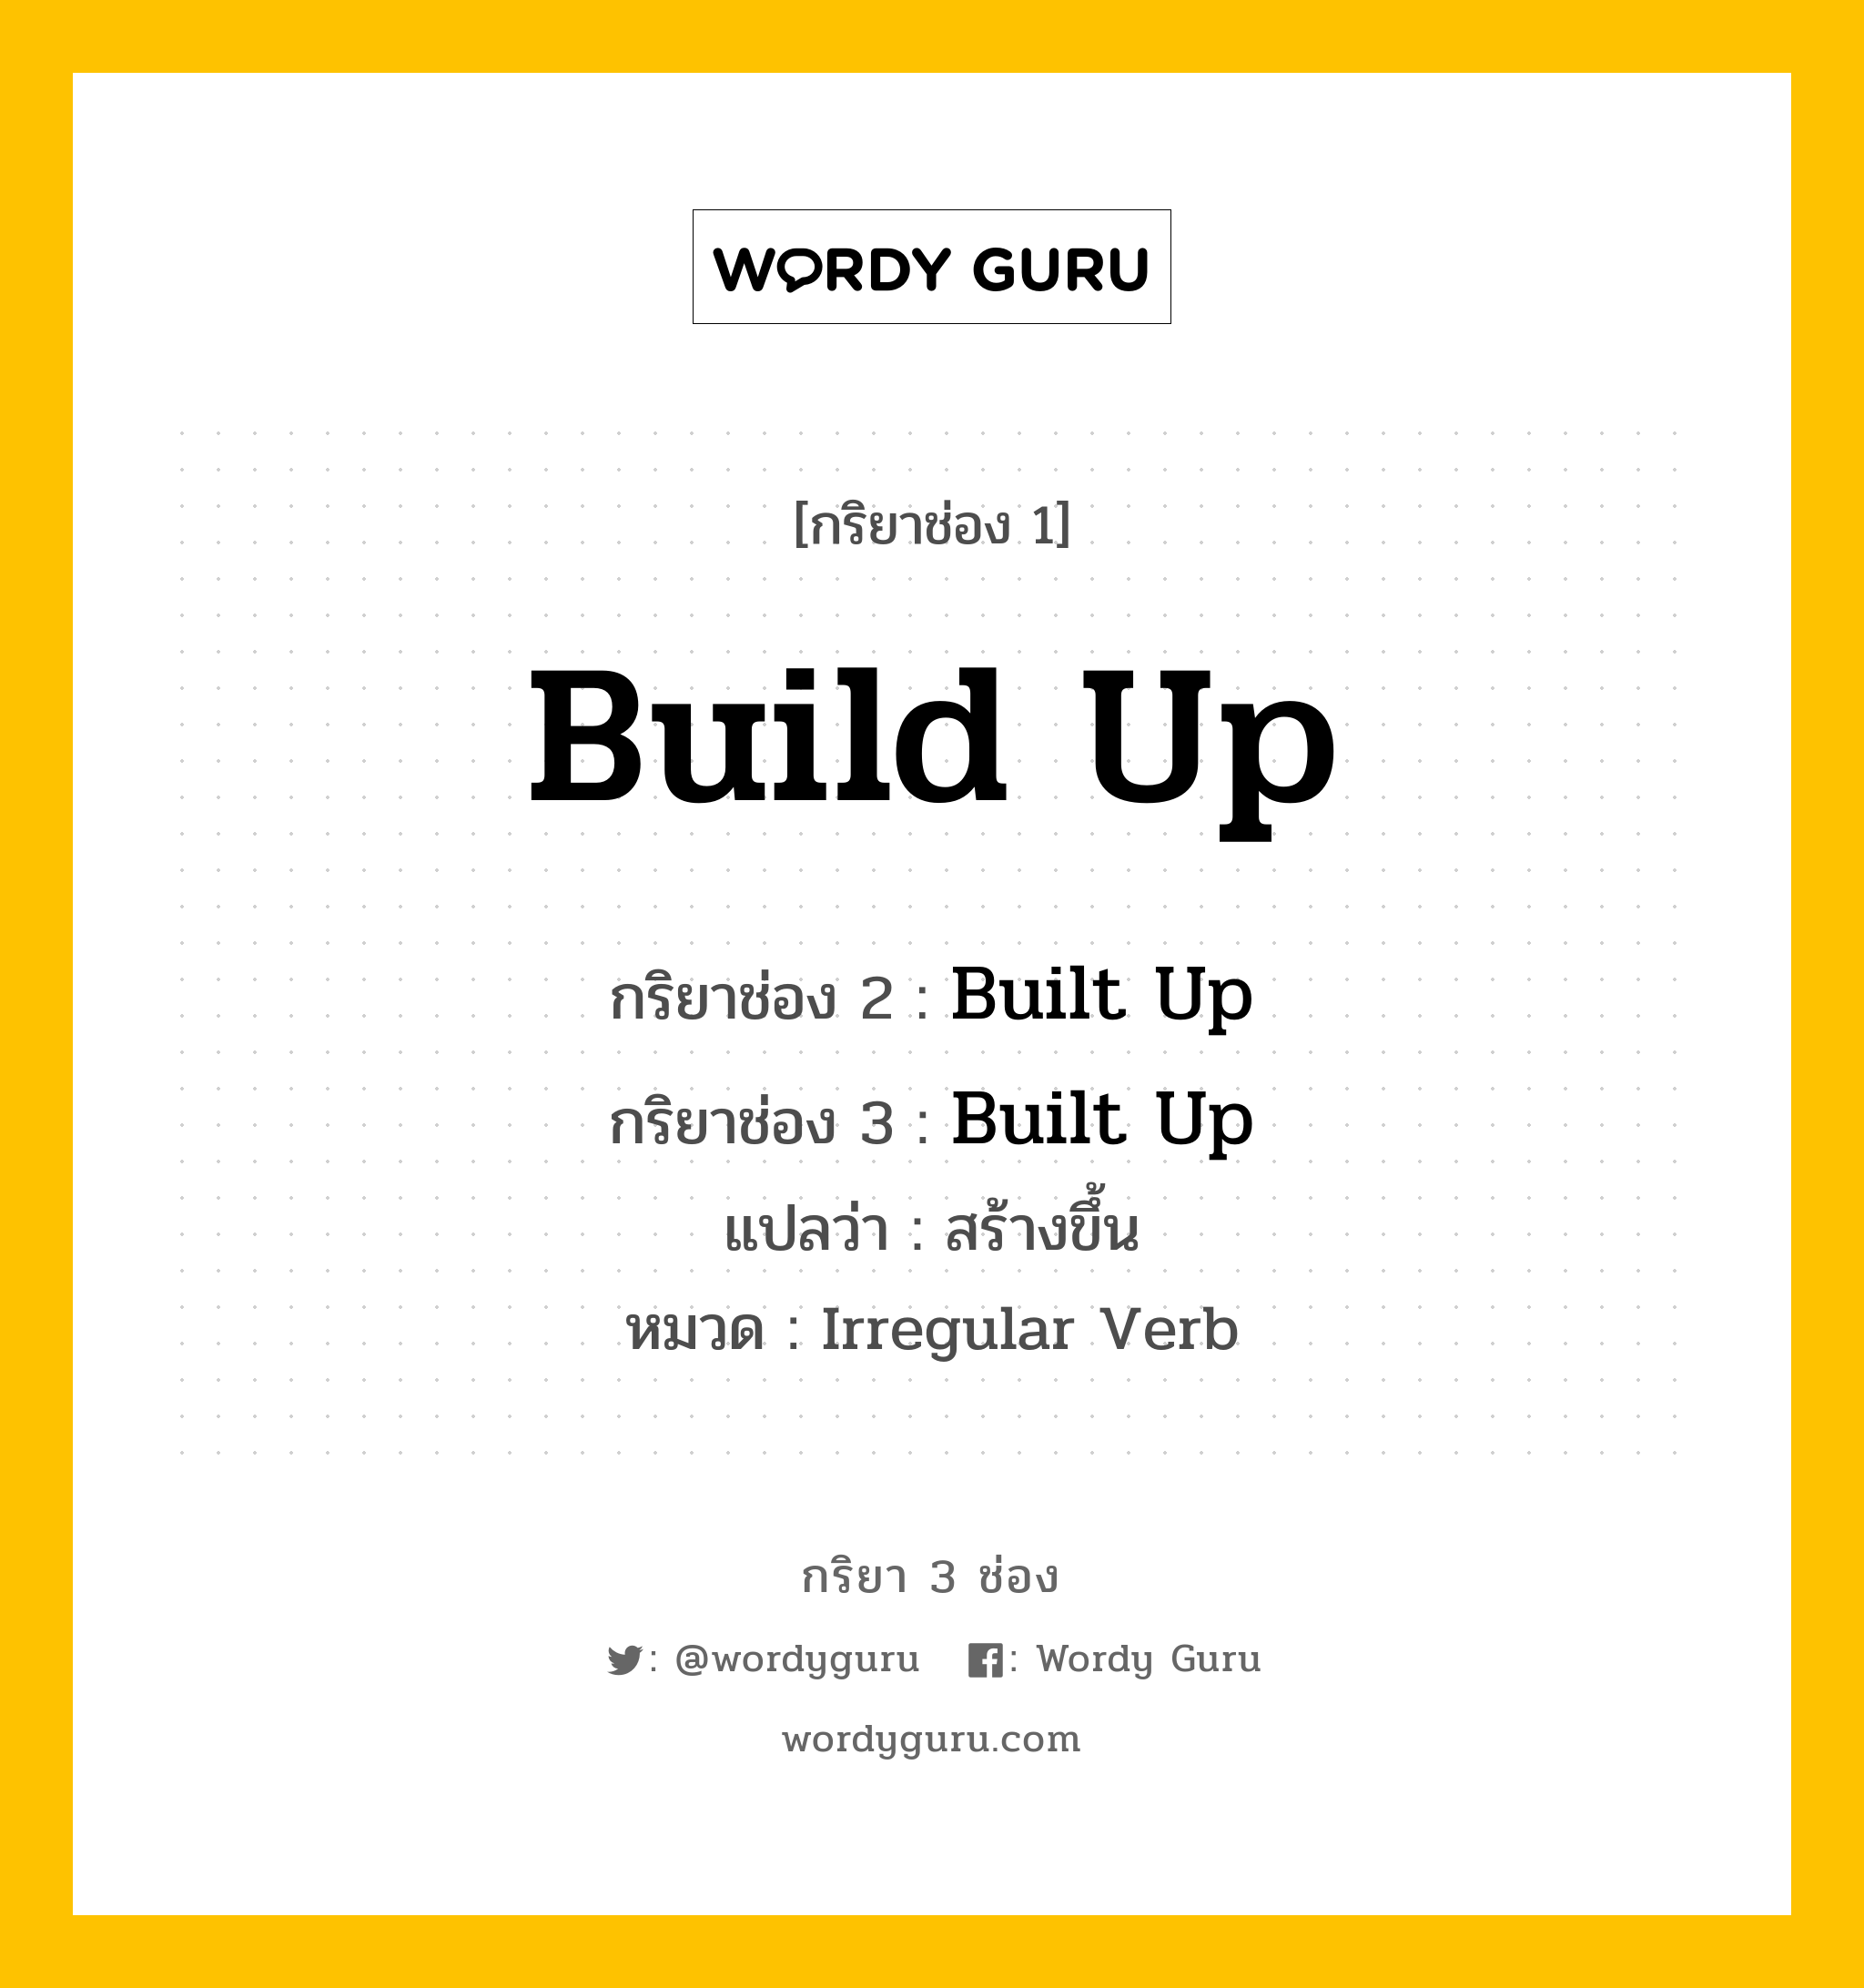 กริยา 3 ช่อง: Build Up ช่อง 2 Build Up ช่อง 3 คืออะไร, กริยาช่อง 1 Build Up กริยาช่อง 2 Built Up กริยาช่อง 3 Built Up แปลว่า สร้างขึ้น หมวด Irregular Verb หมวด Irregular Verb